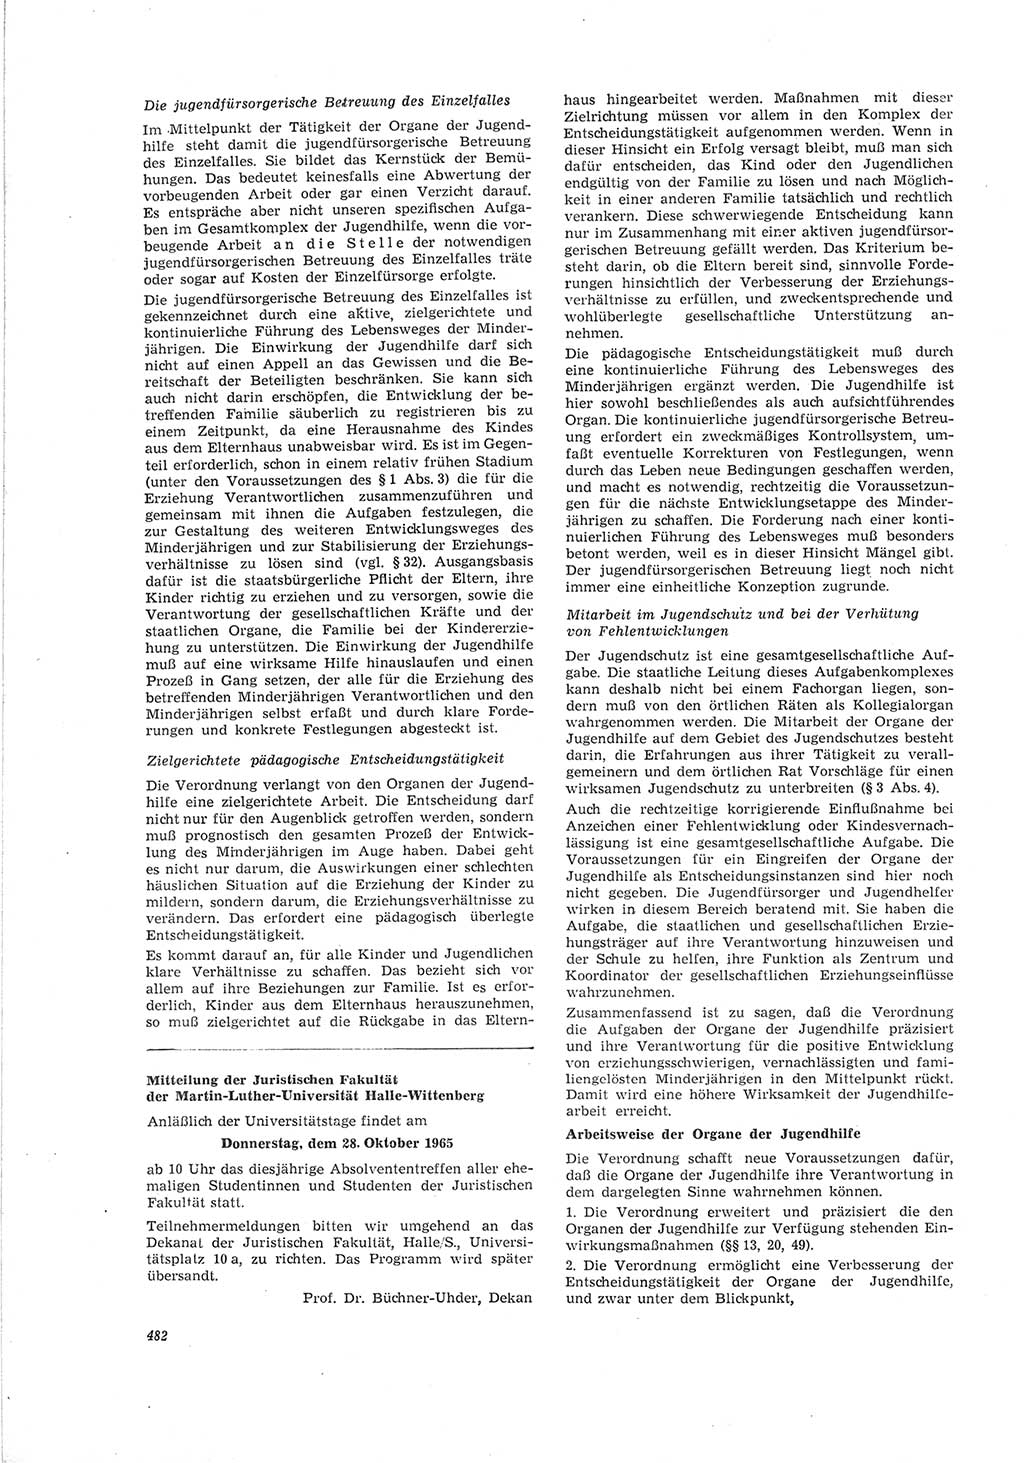 Neue Justiz (NJ), Zeitschrift für Recht und Rechtswissenschaft [Deutsche Demokratische Republik (DDR)], 19. Jahrgang 1965, Seite 482 (NJ DDR 1965, S. 482)